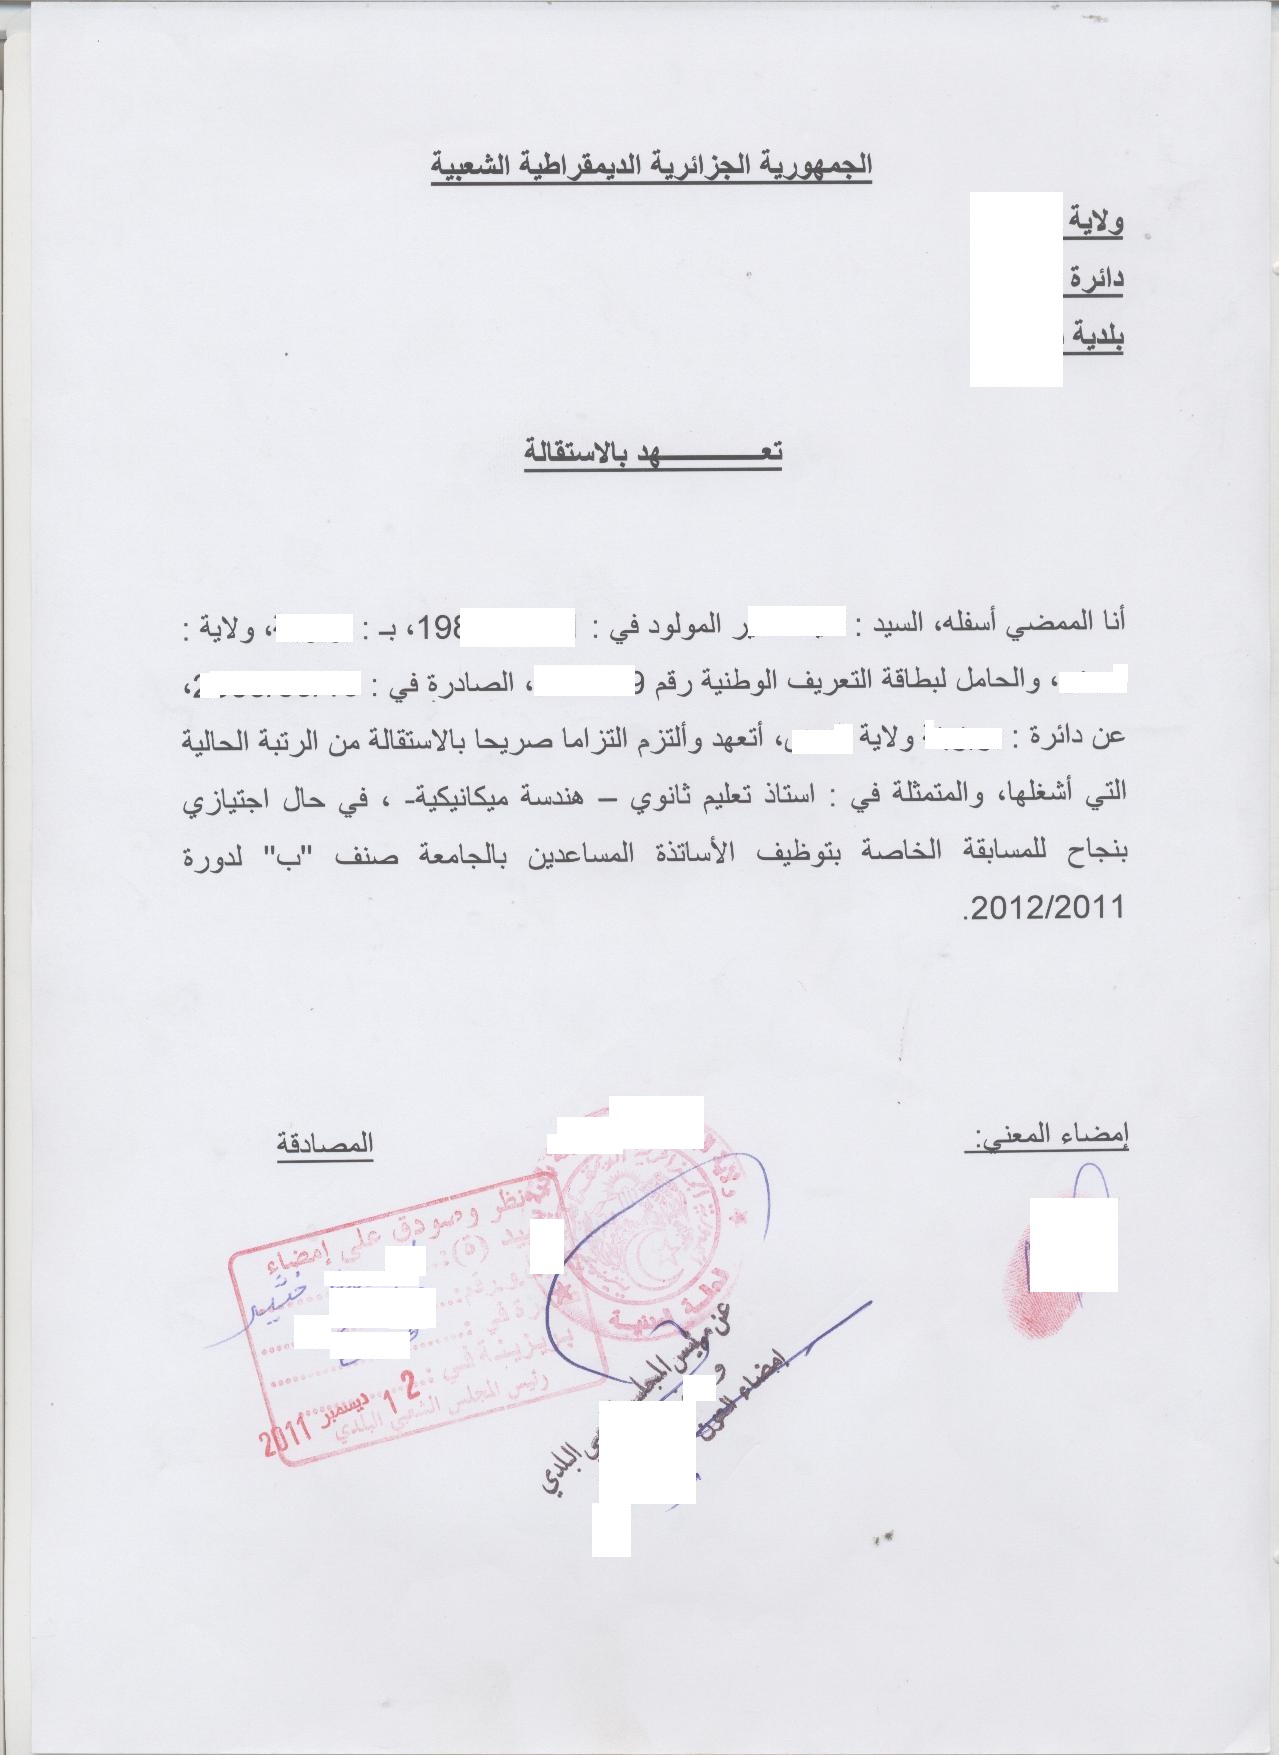 نموذج طلب استقالة من العمل في الجزائر